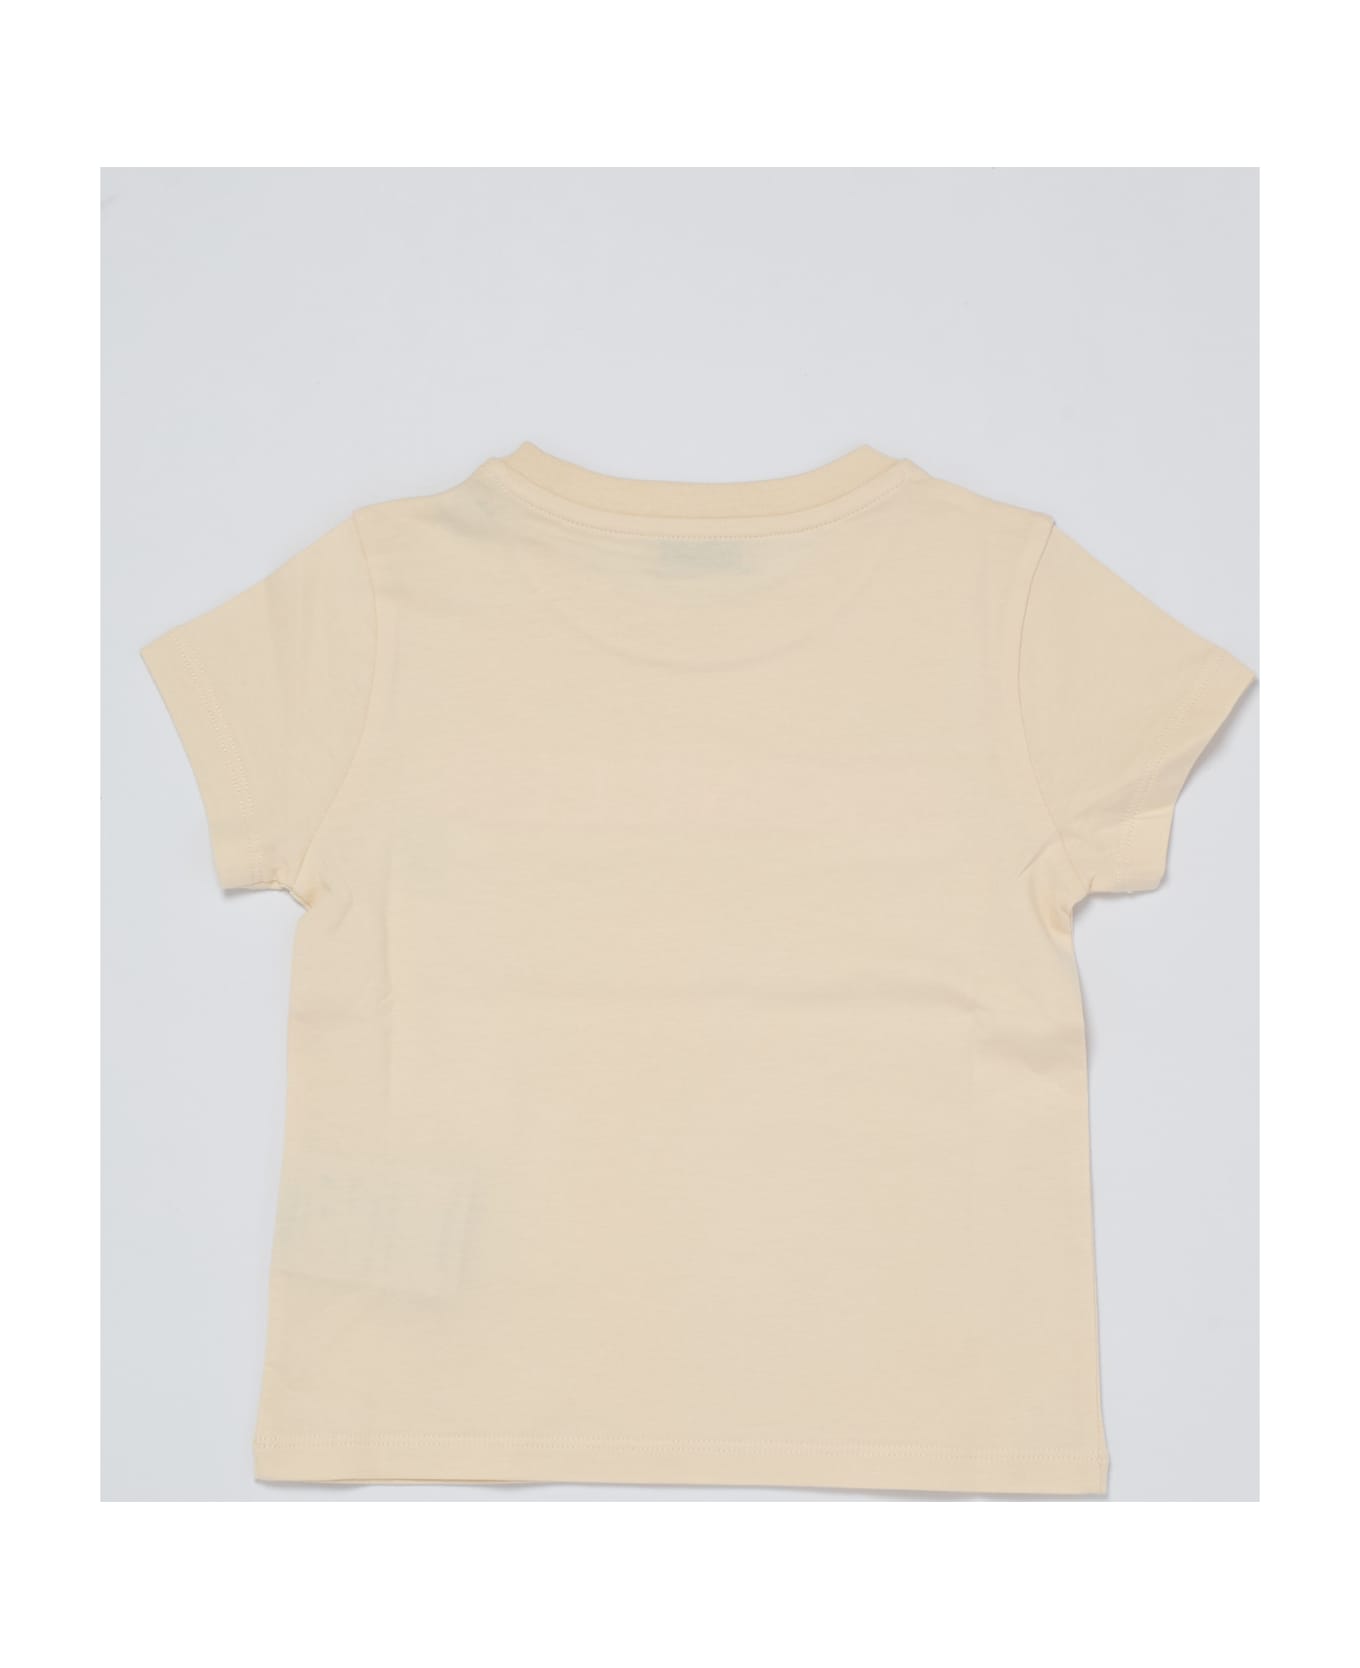 Moncler T-shirt T-shirt - BURRO